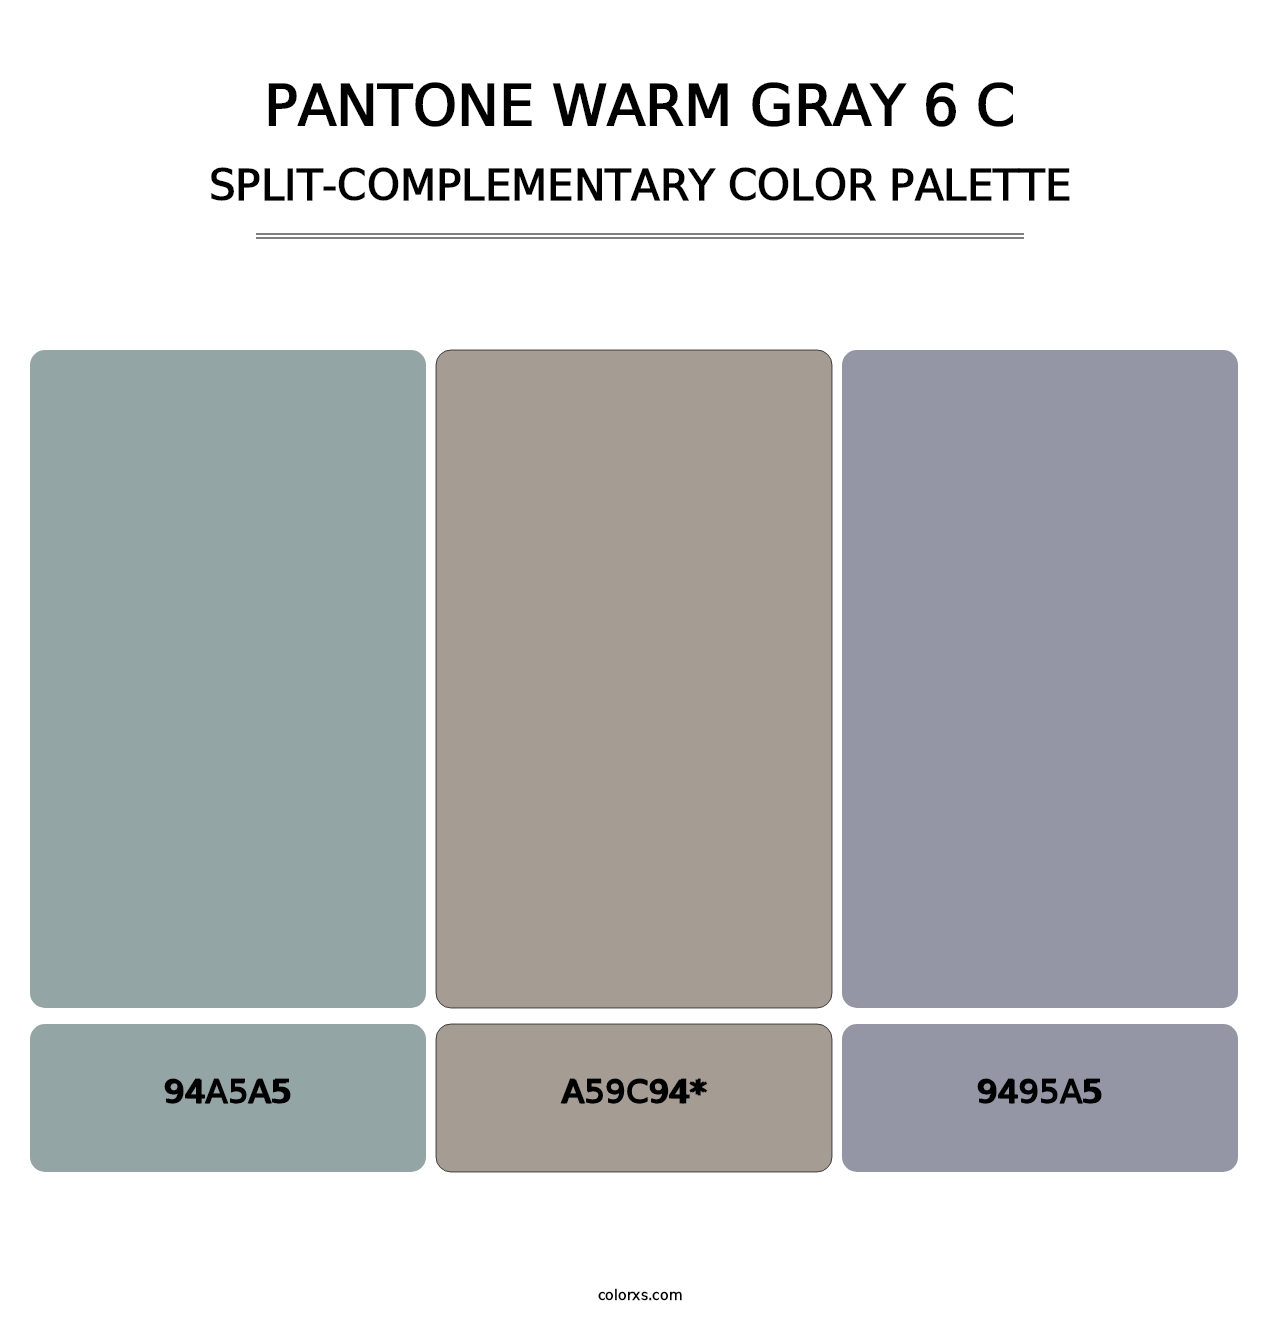 PANTONE Warm Gray 6 C - Split-Complementary Color Palette